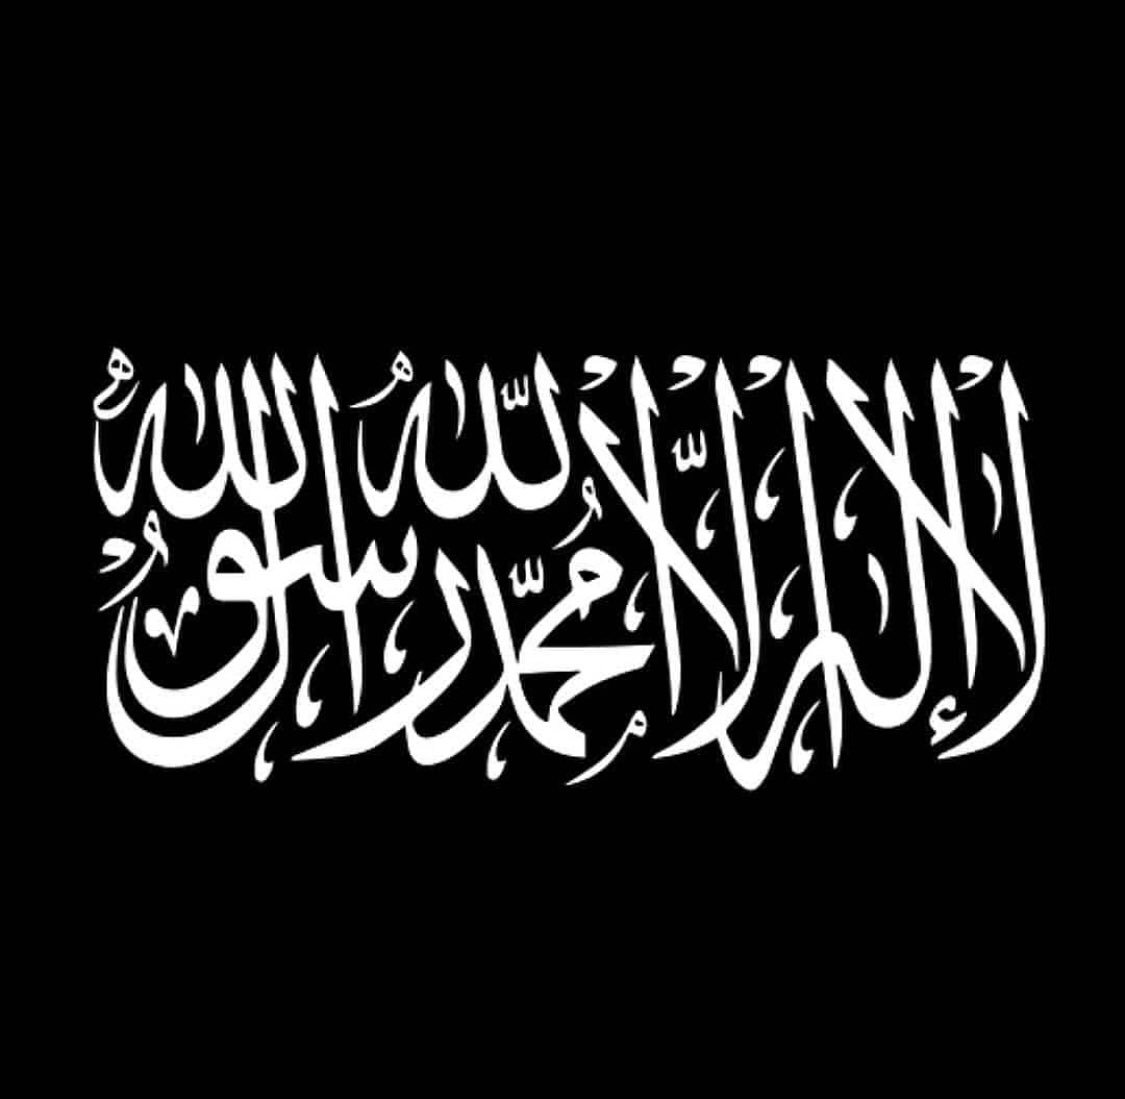 Ла иллаха иллалах. Калима шахада. Исламский флаг. Мухаммадан Расулюллах. Знамя Ислама.